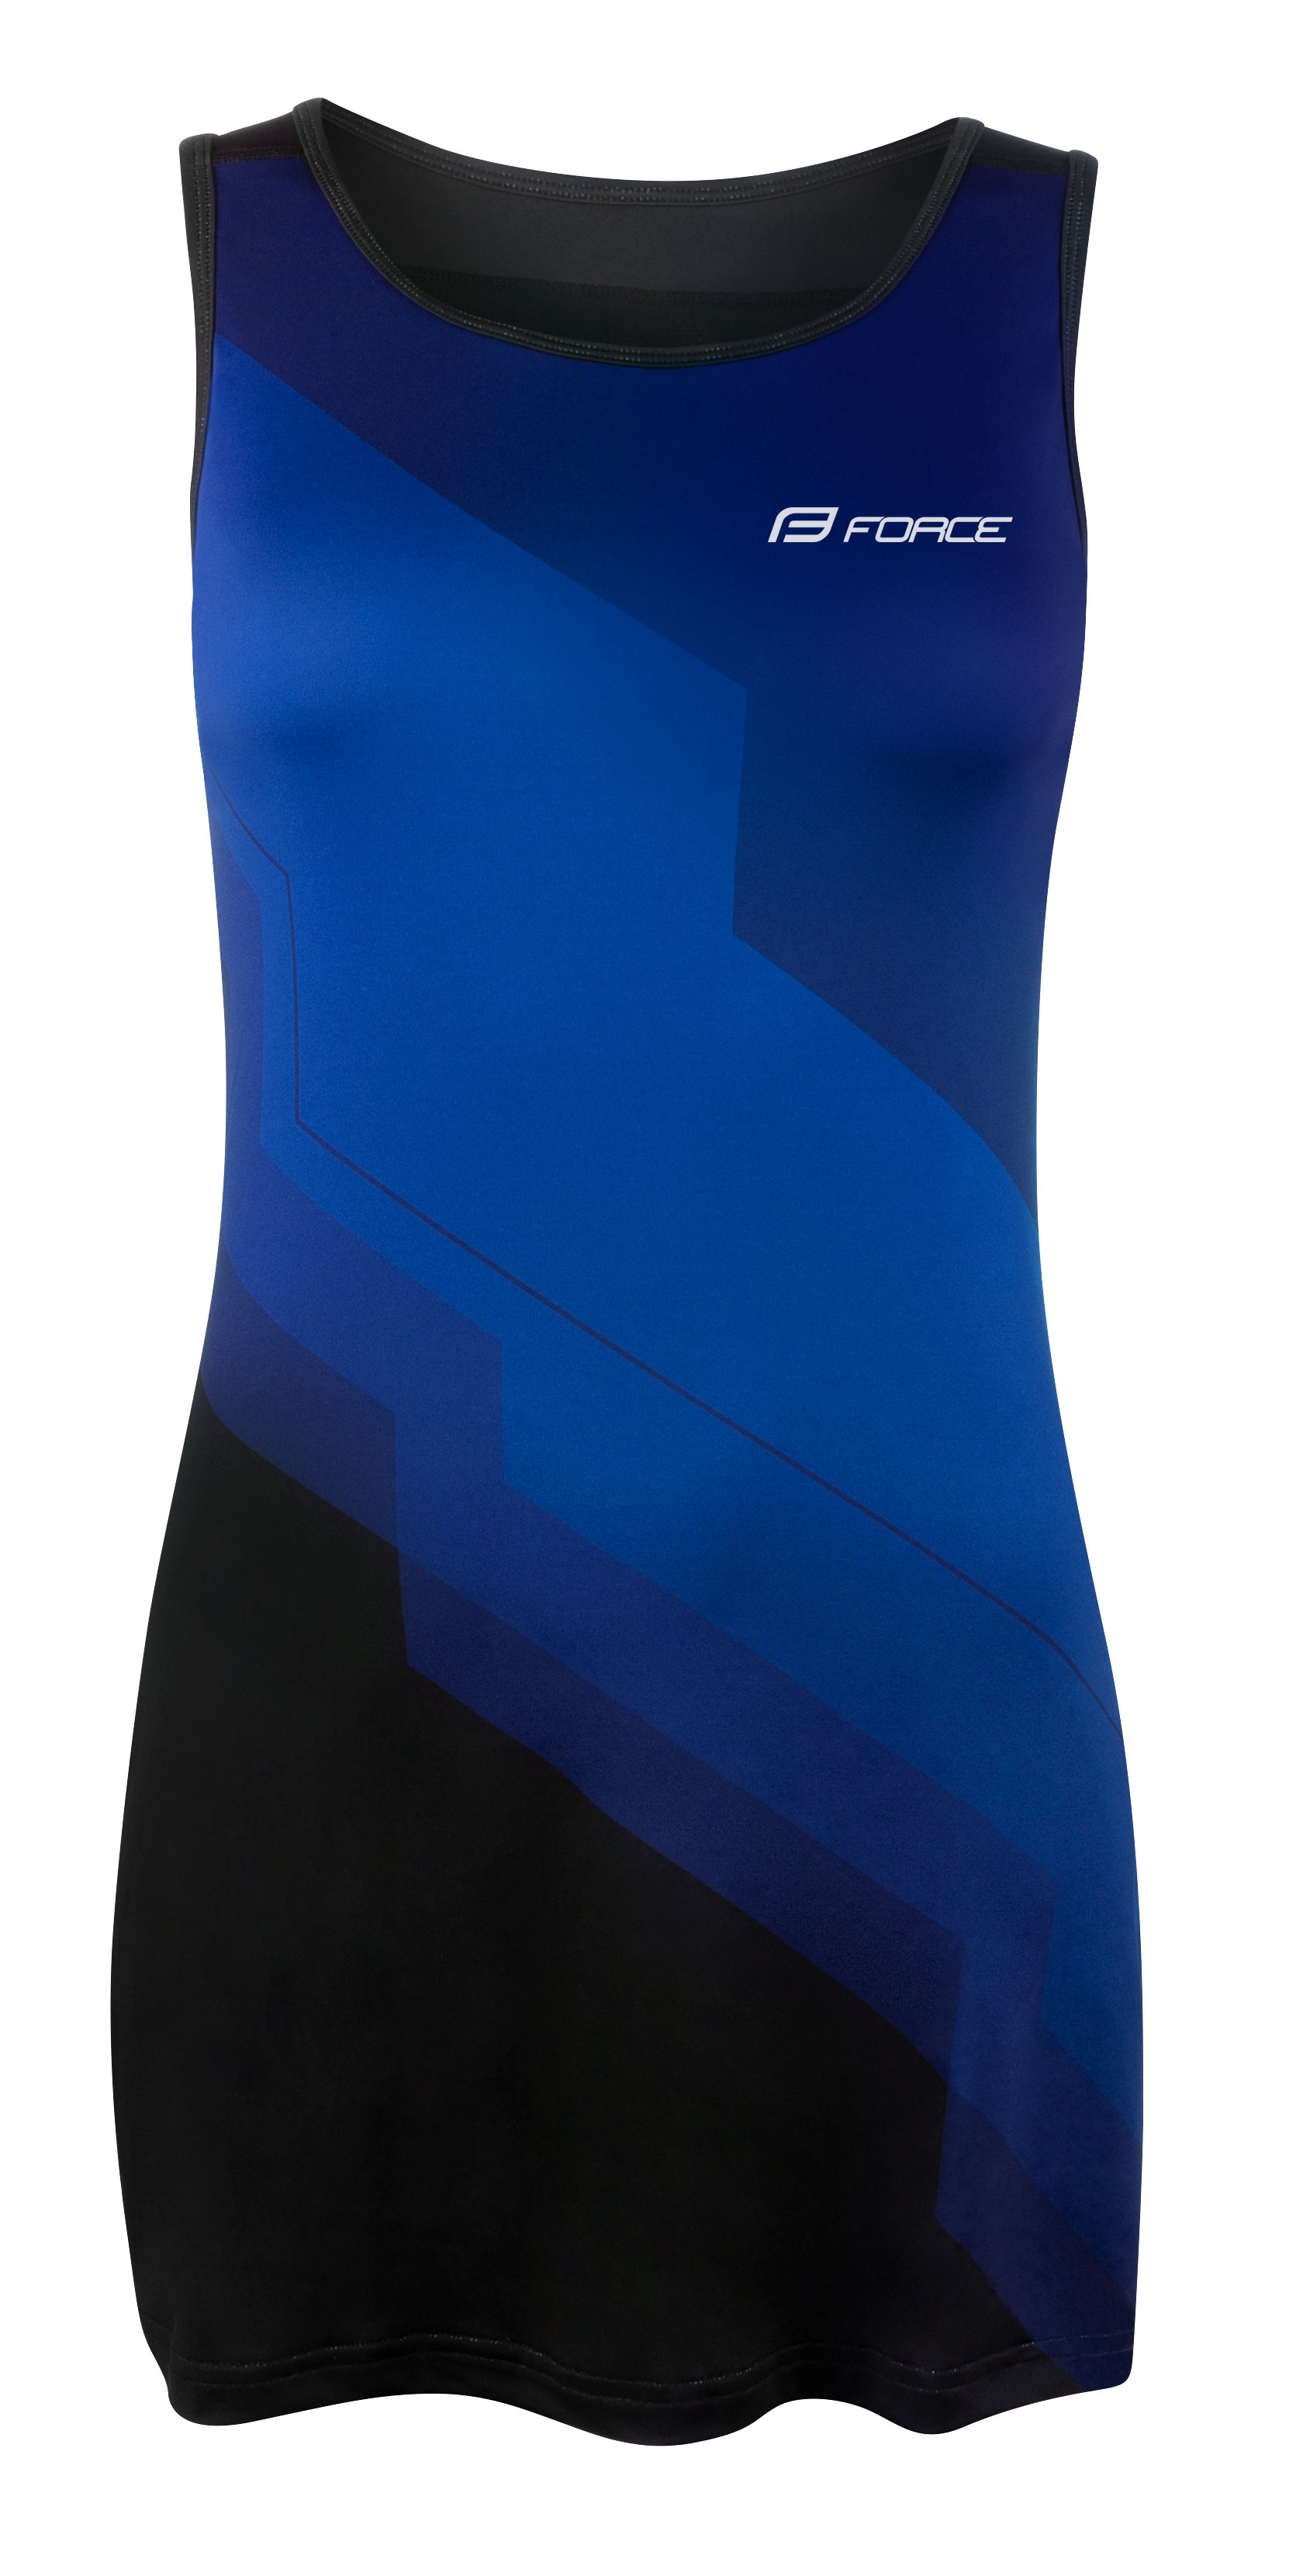 šaty sportovní FORCE ABBY, modro-černé S